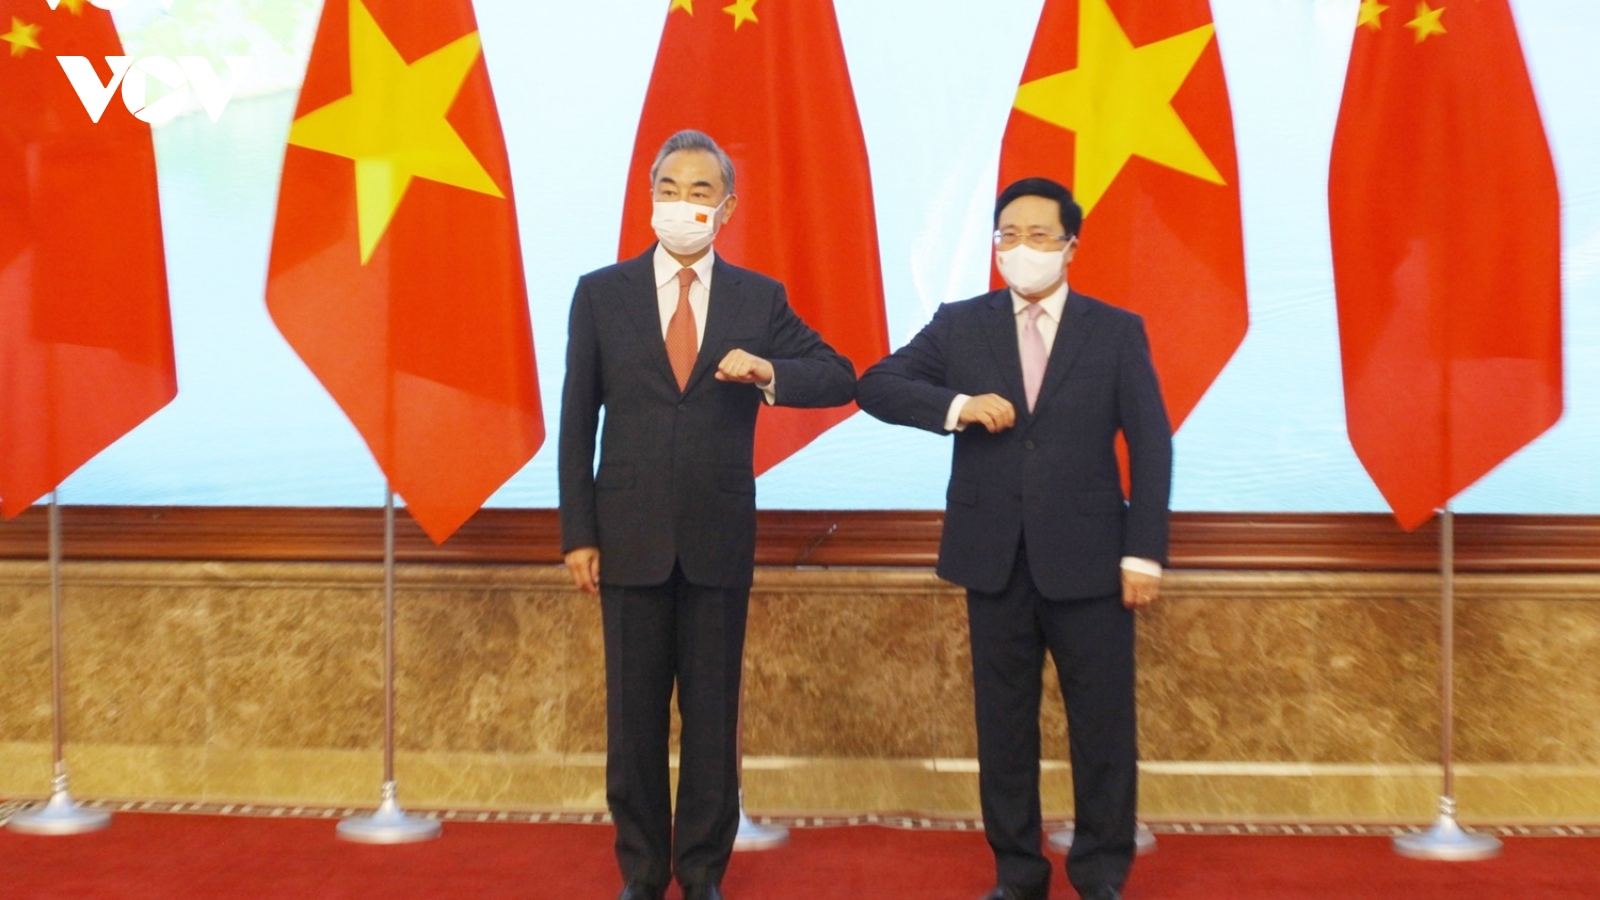 Phó Thủ tướng Phạm Bình Minh tiếp Ngoại trưởng Trung Quốc - Vương Nghị